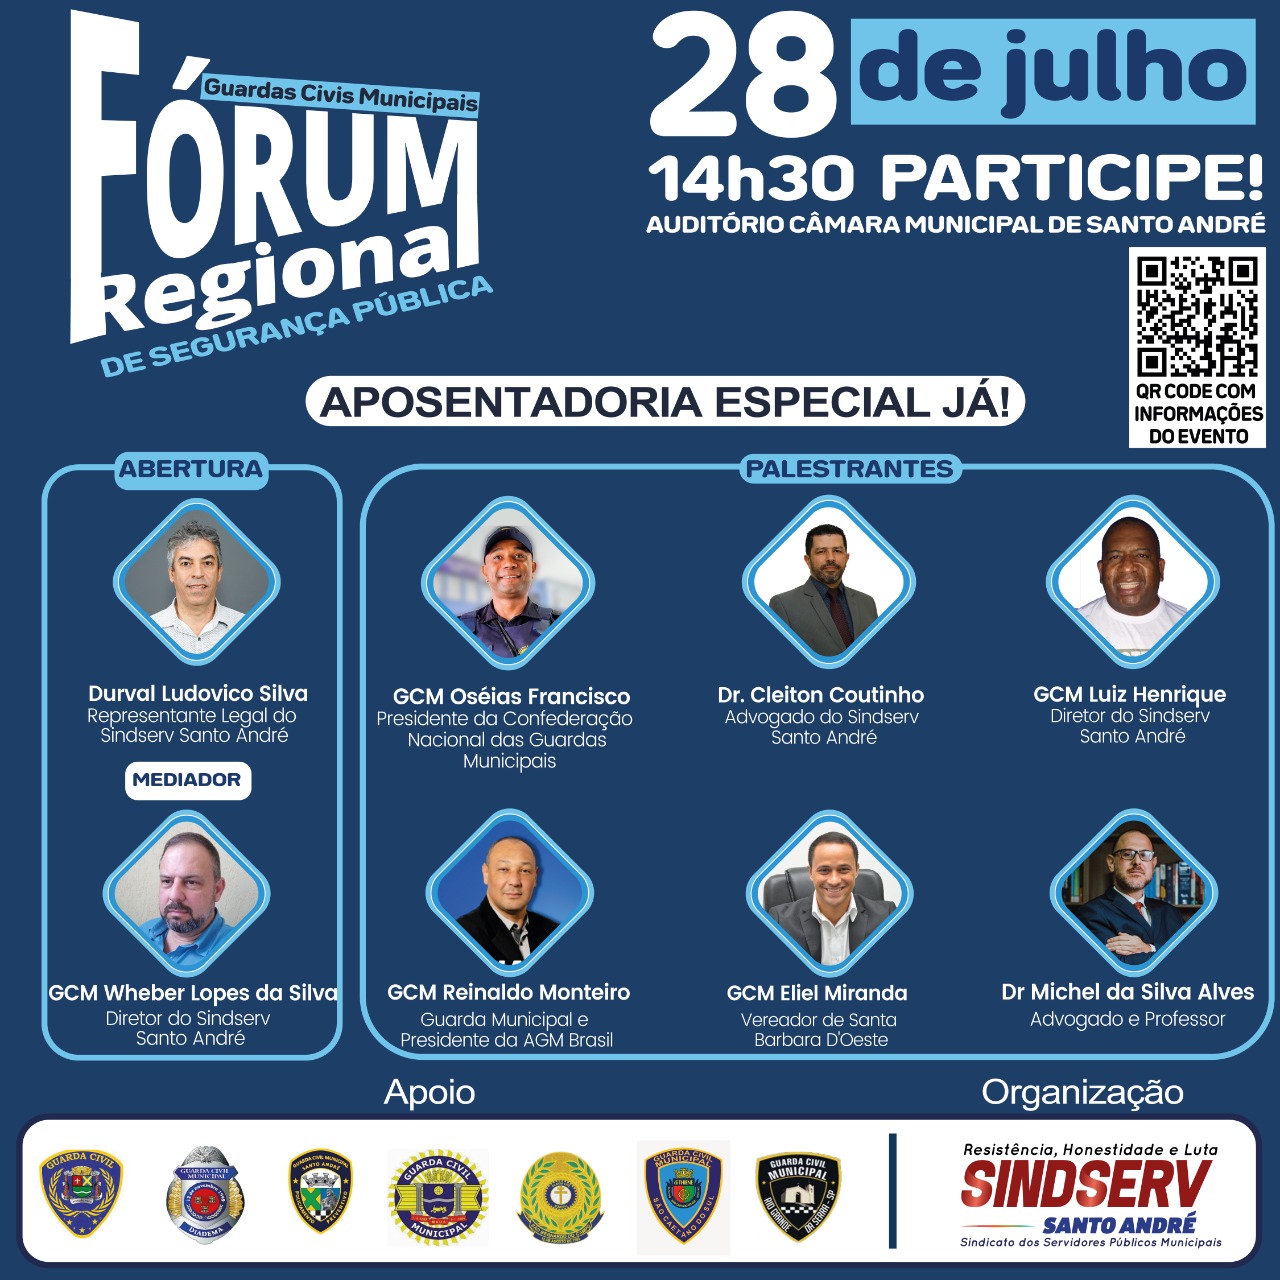 Imagem de 28 de julho: Fórum de Segurança Pública Regional da GCM debaterá direitos e aposentadoria especial
